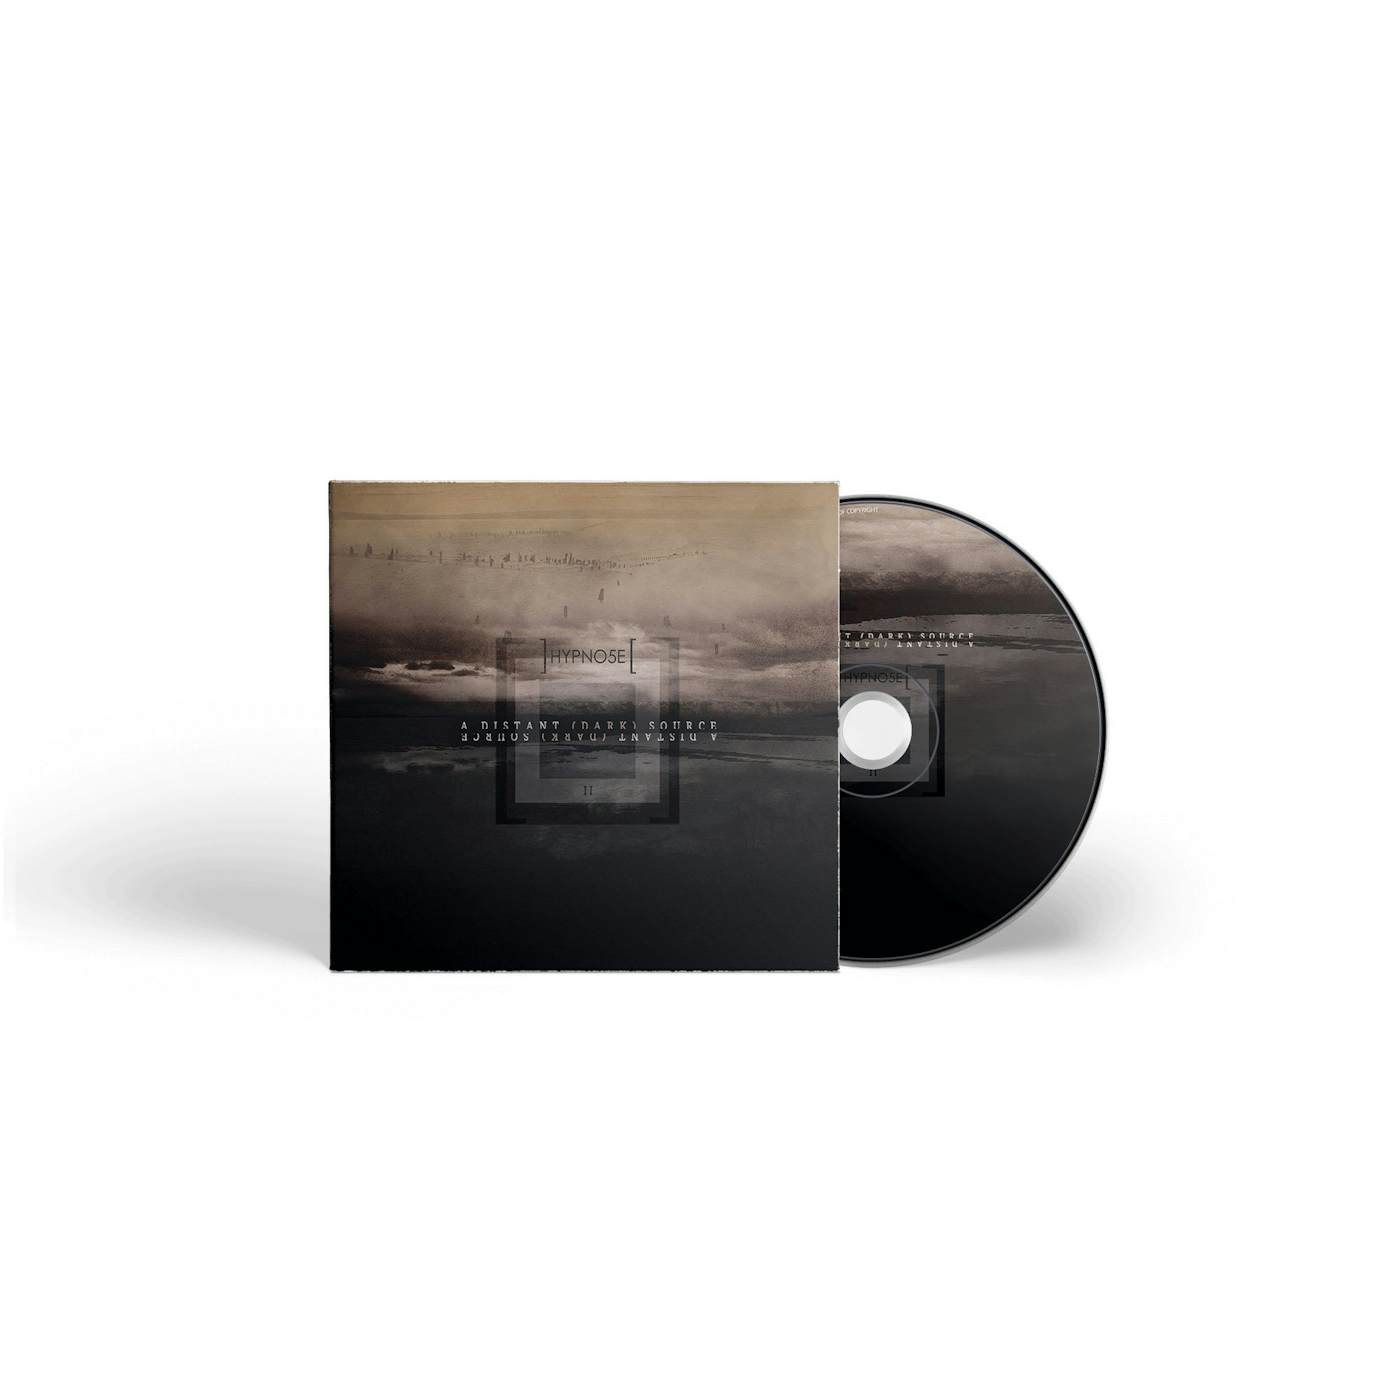 Hypno5e "A Distant (Dark) Source" CD